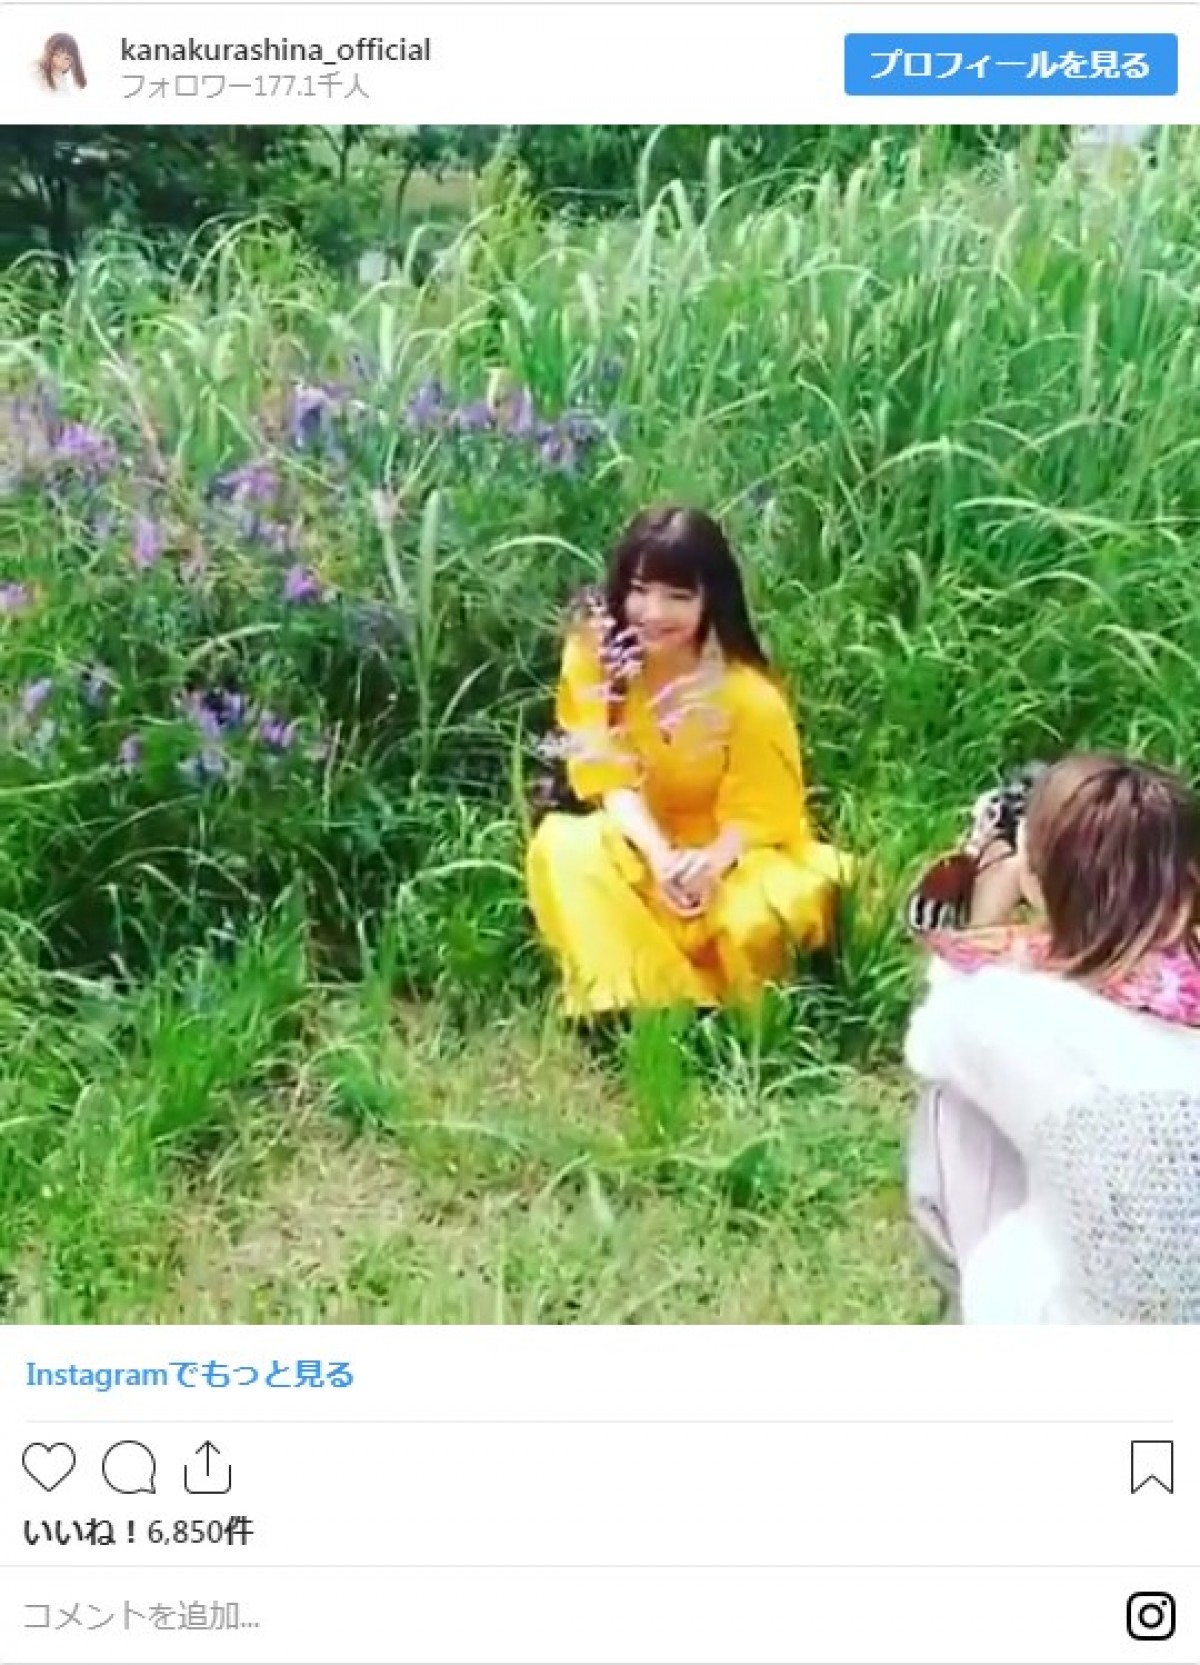 「まるで妖精」 倉科カナ、草原での撮影姿にネット反響